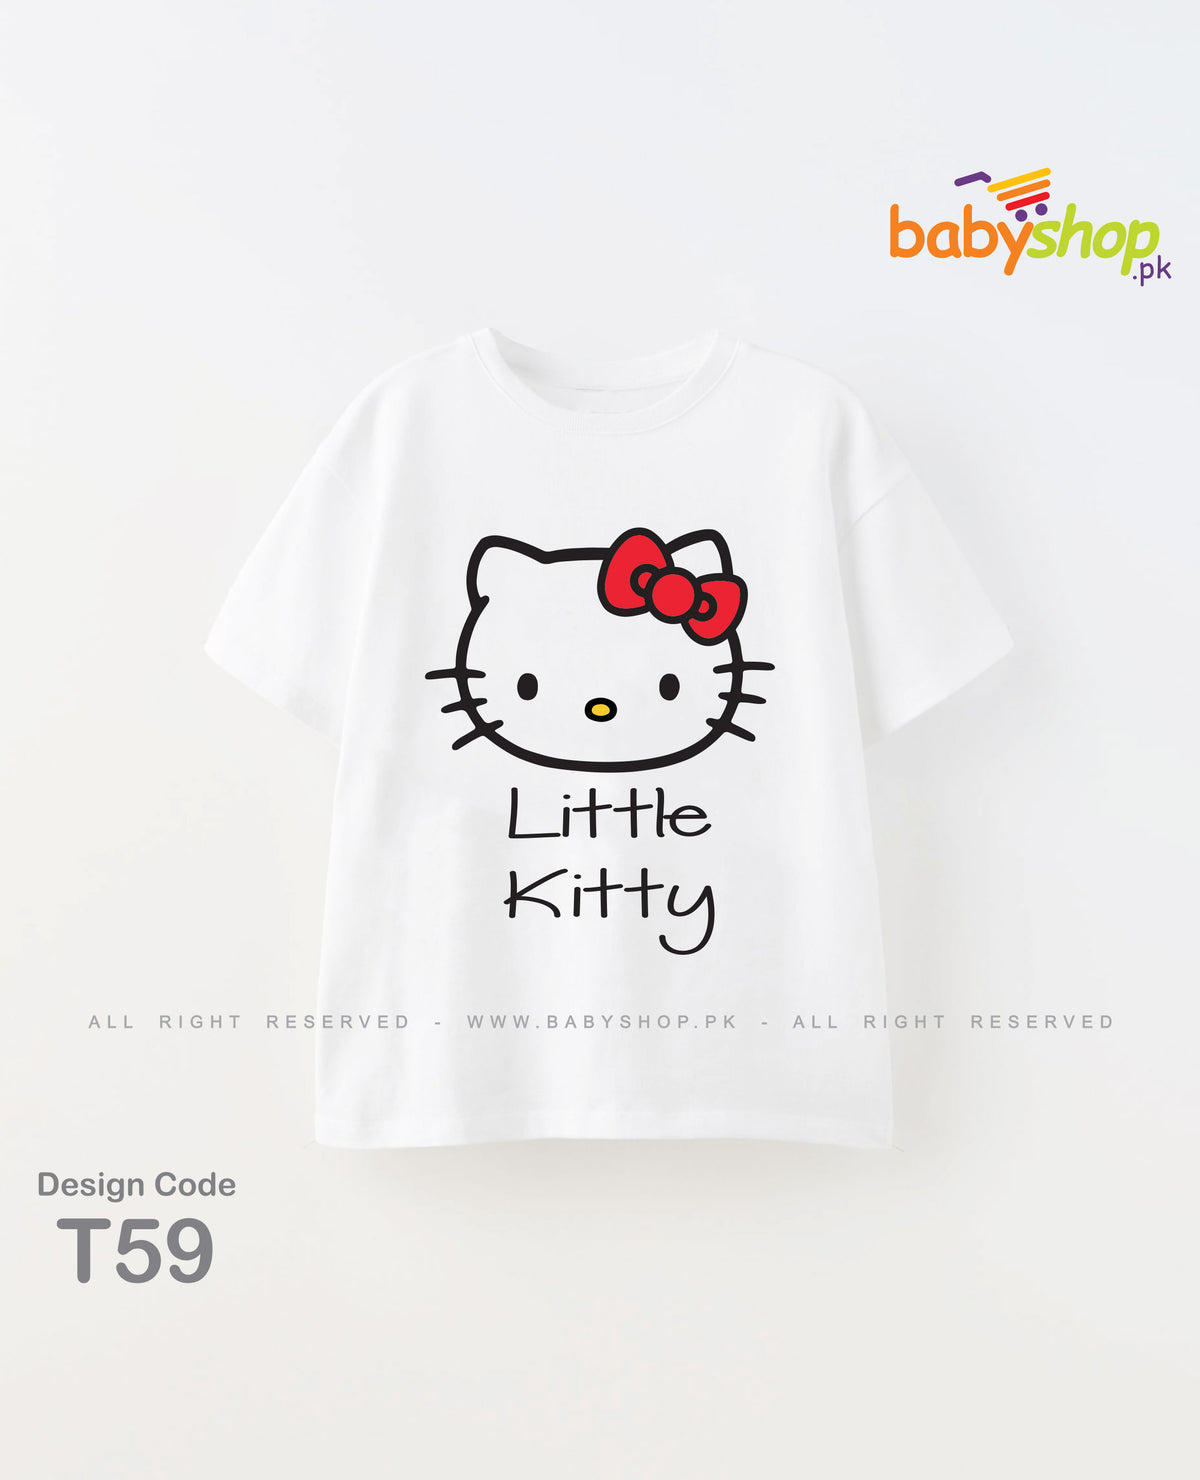 Little kitty baby t shirt